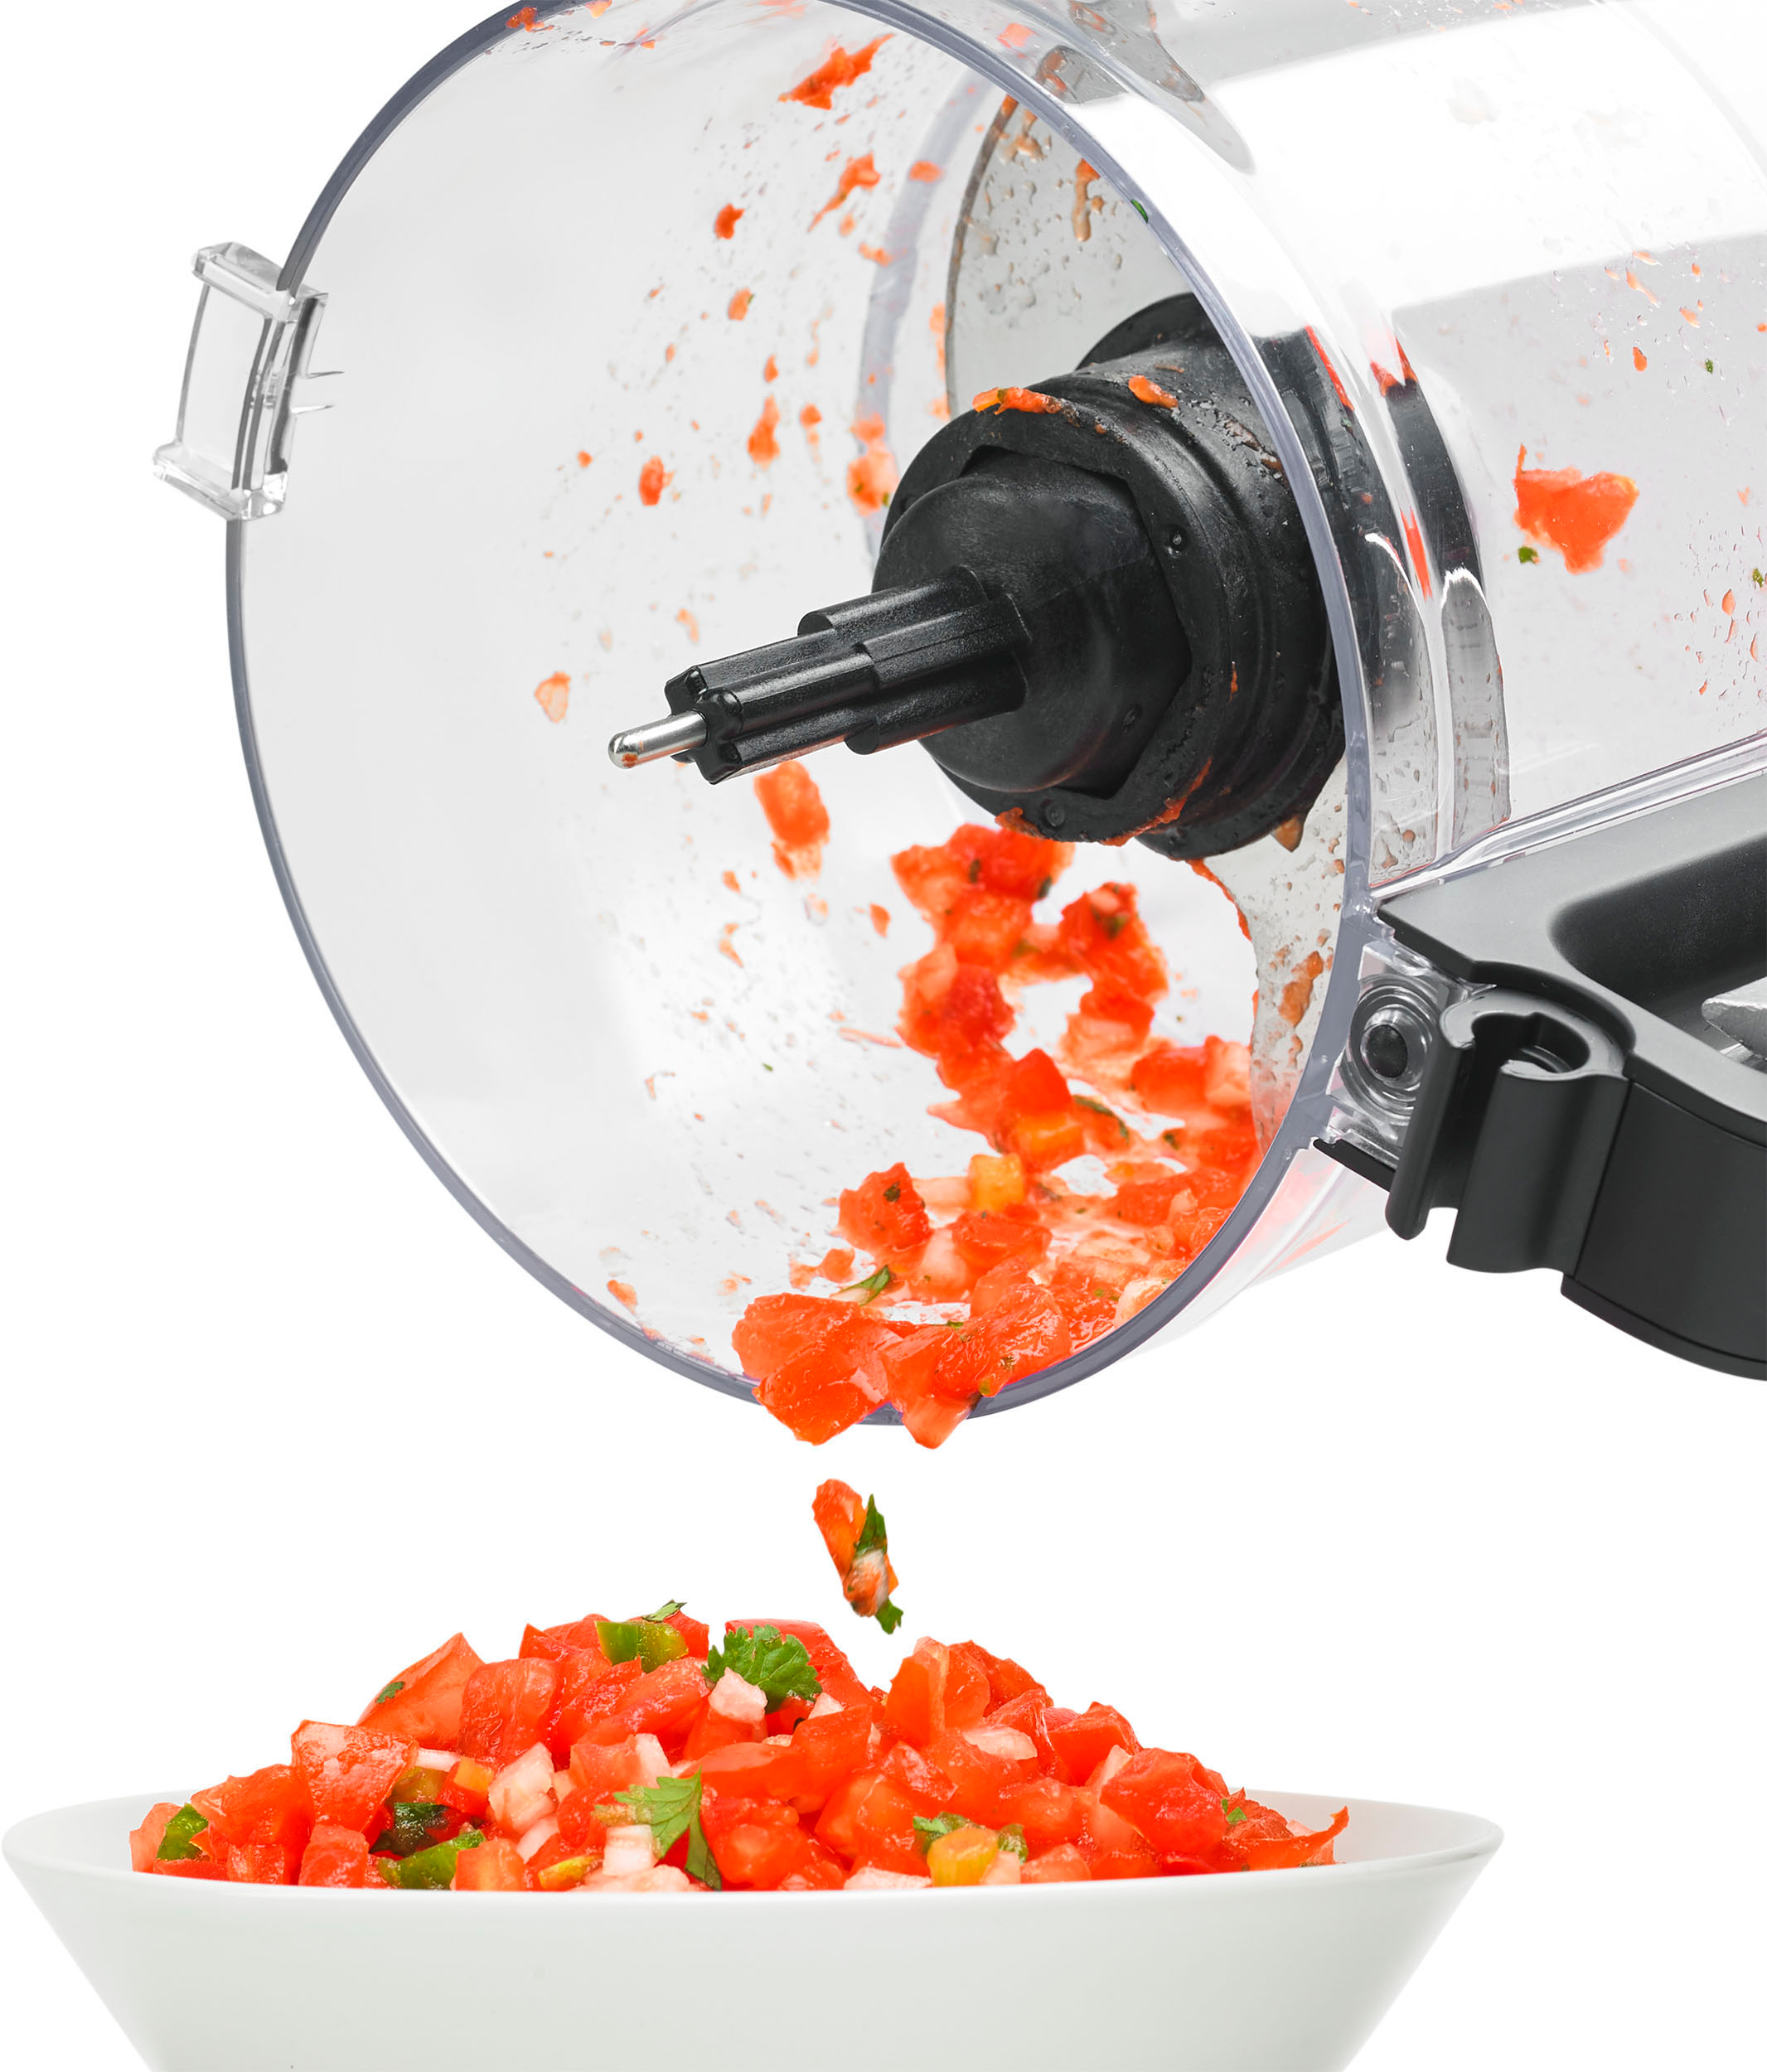 KitchenAid Contour Silver 9-Cup Food Processor + Reviews